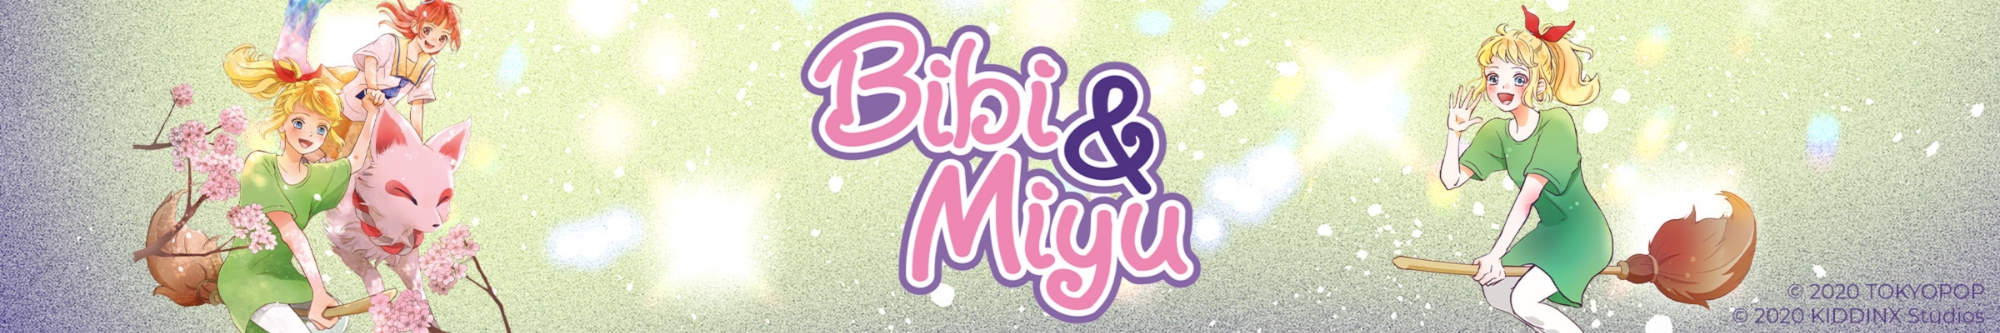 Showroom - Bibi and Miyu